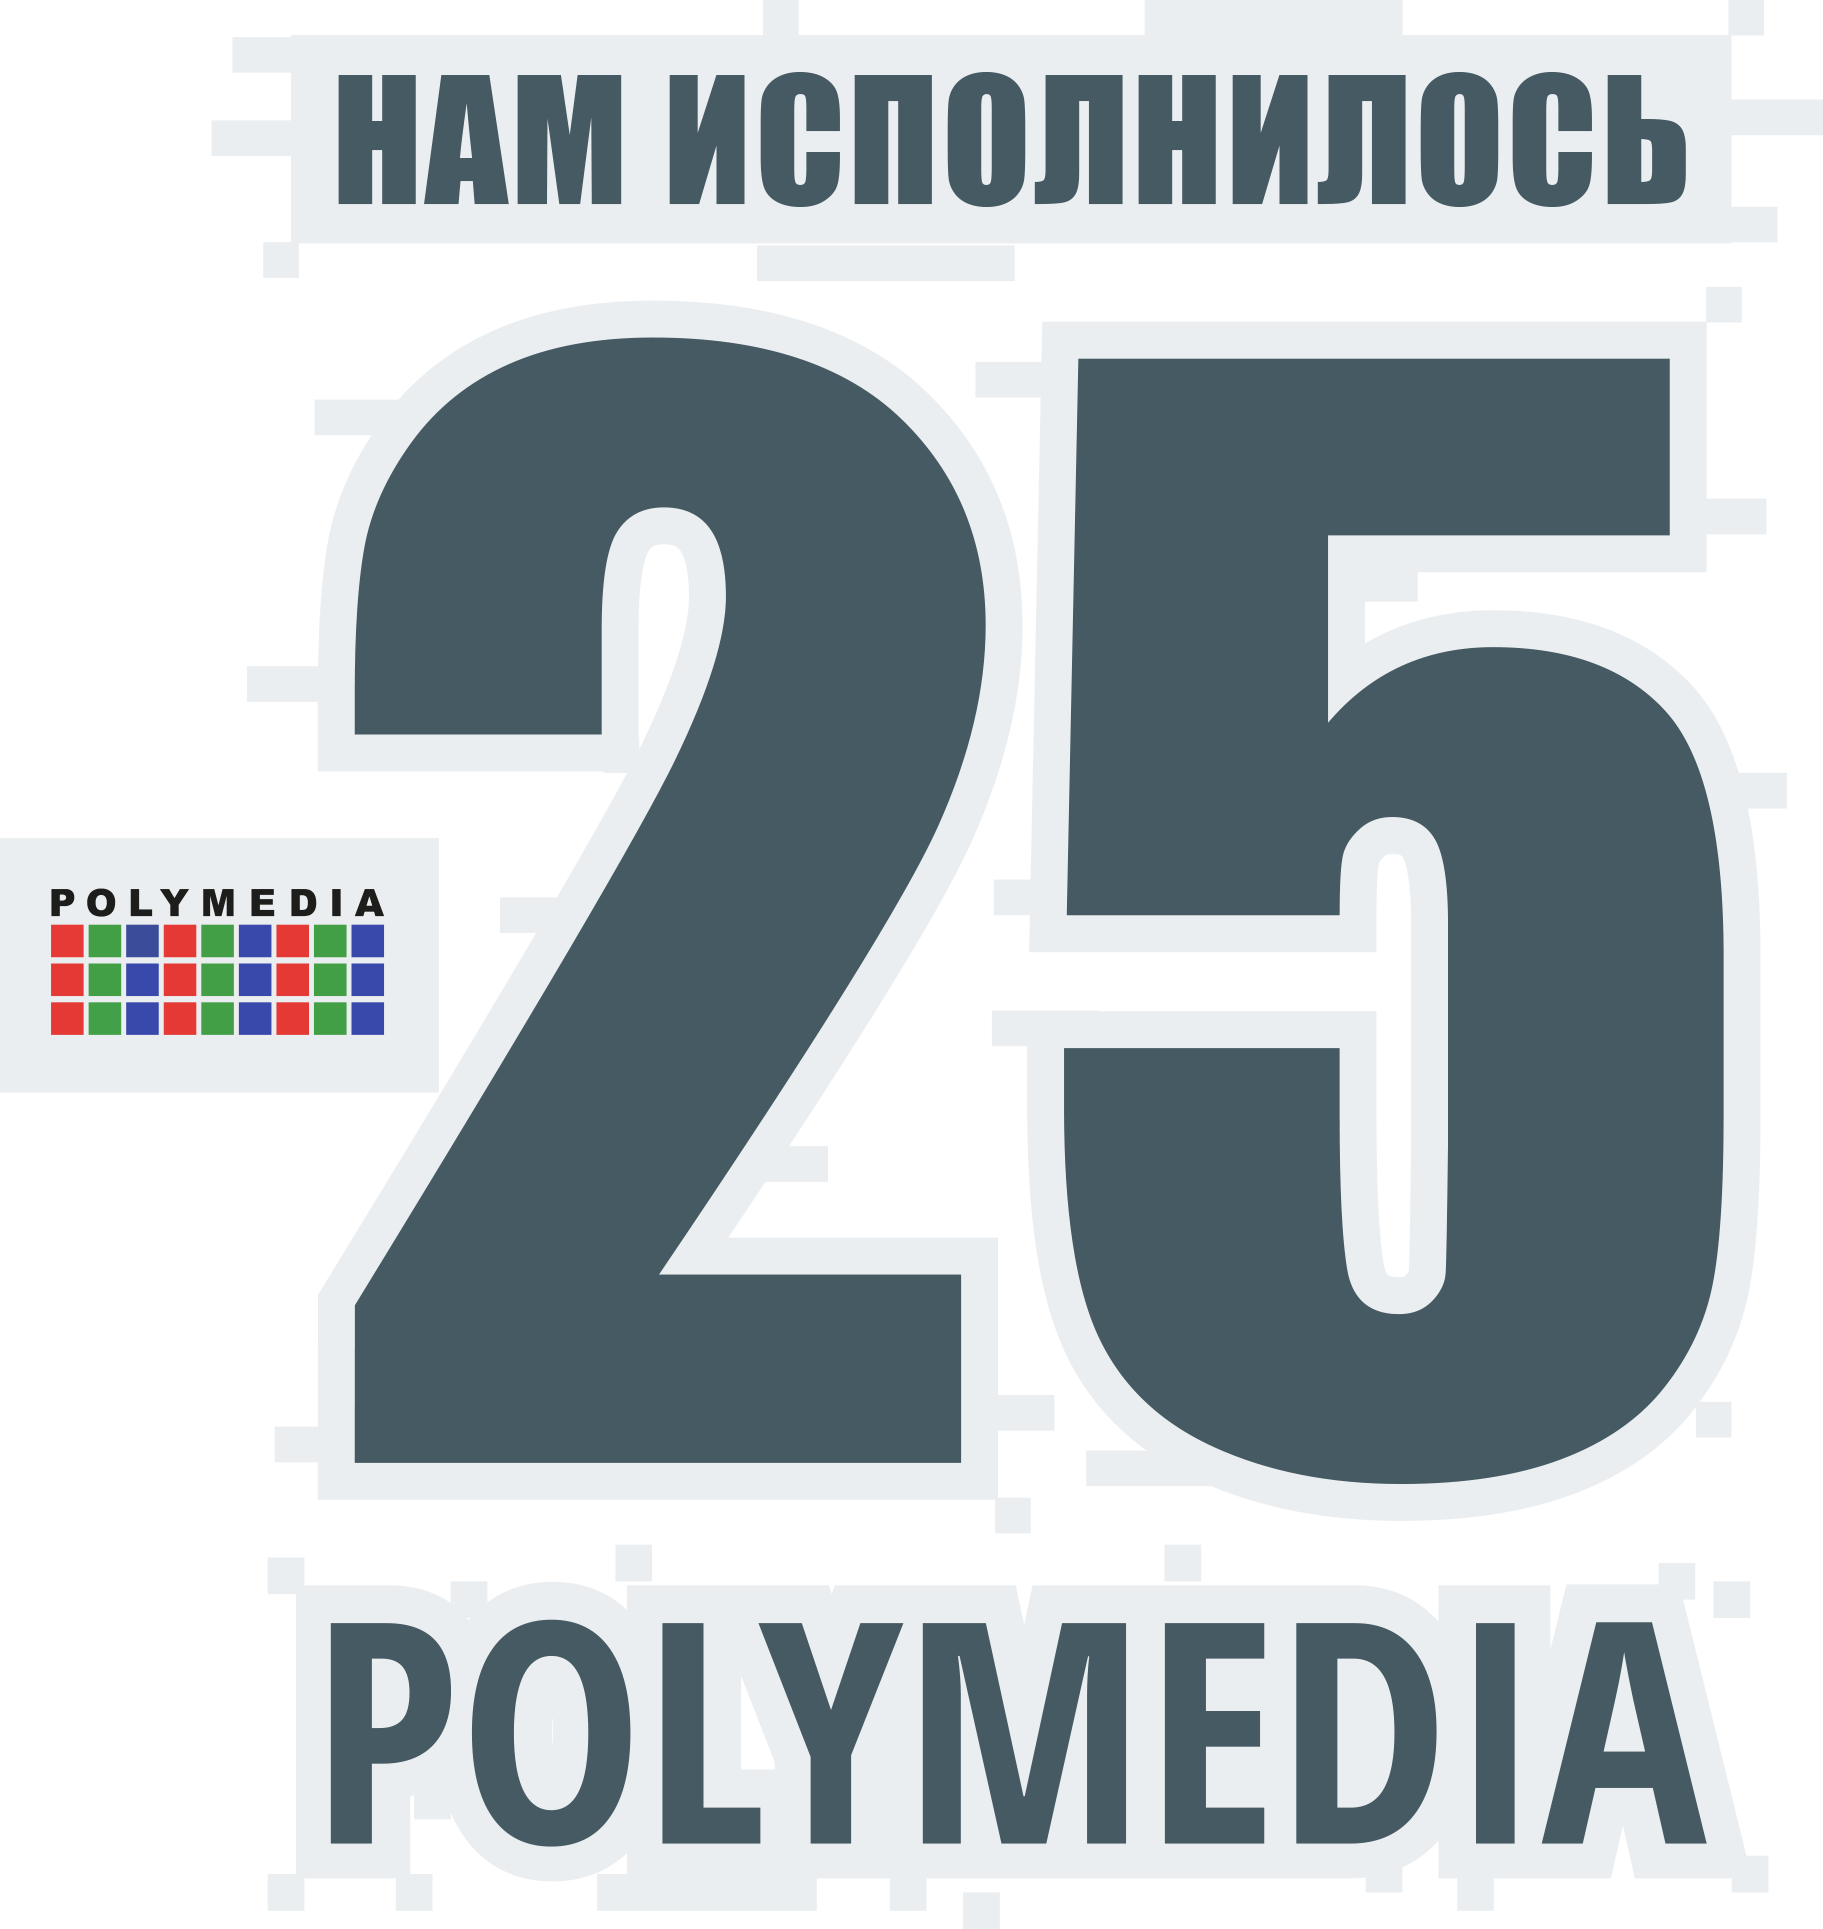 Polymedia 25